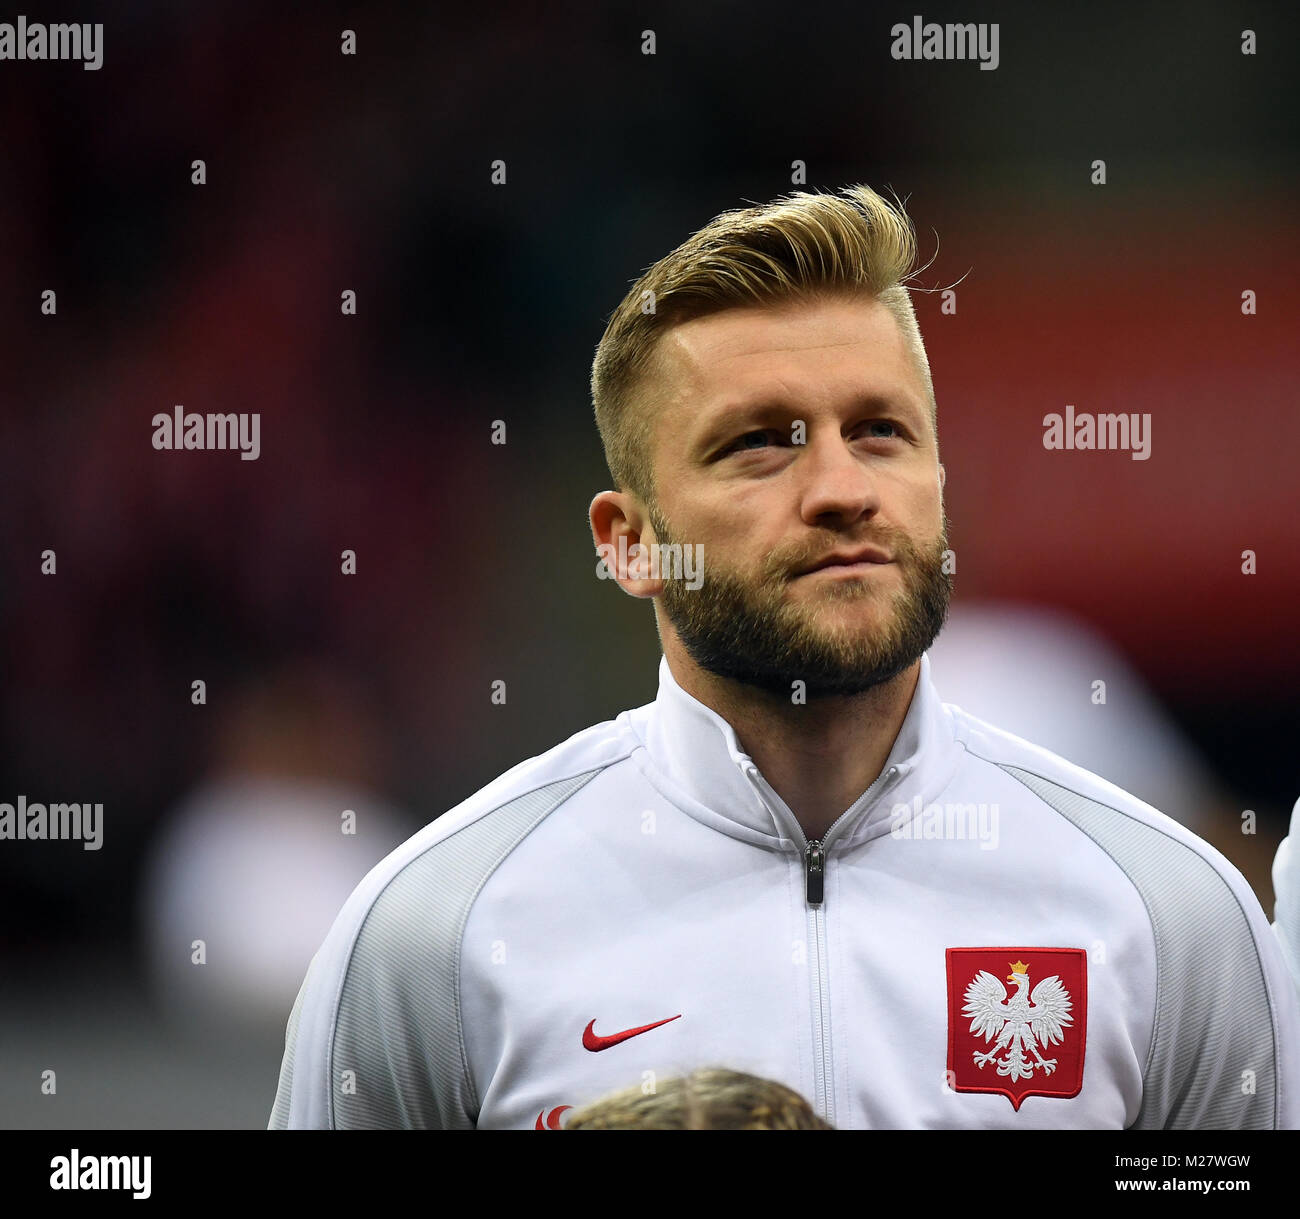 8 Oktober, 2017 - Warschau, Polen: Fußball WM 2018 Qualifikation Rusia Polen - Montenegro o/p Jakub Blaszczykowski (Polen) Stockfoto